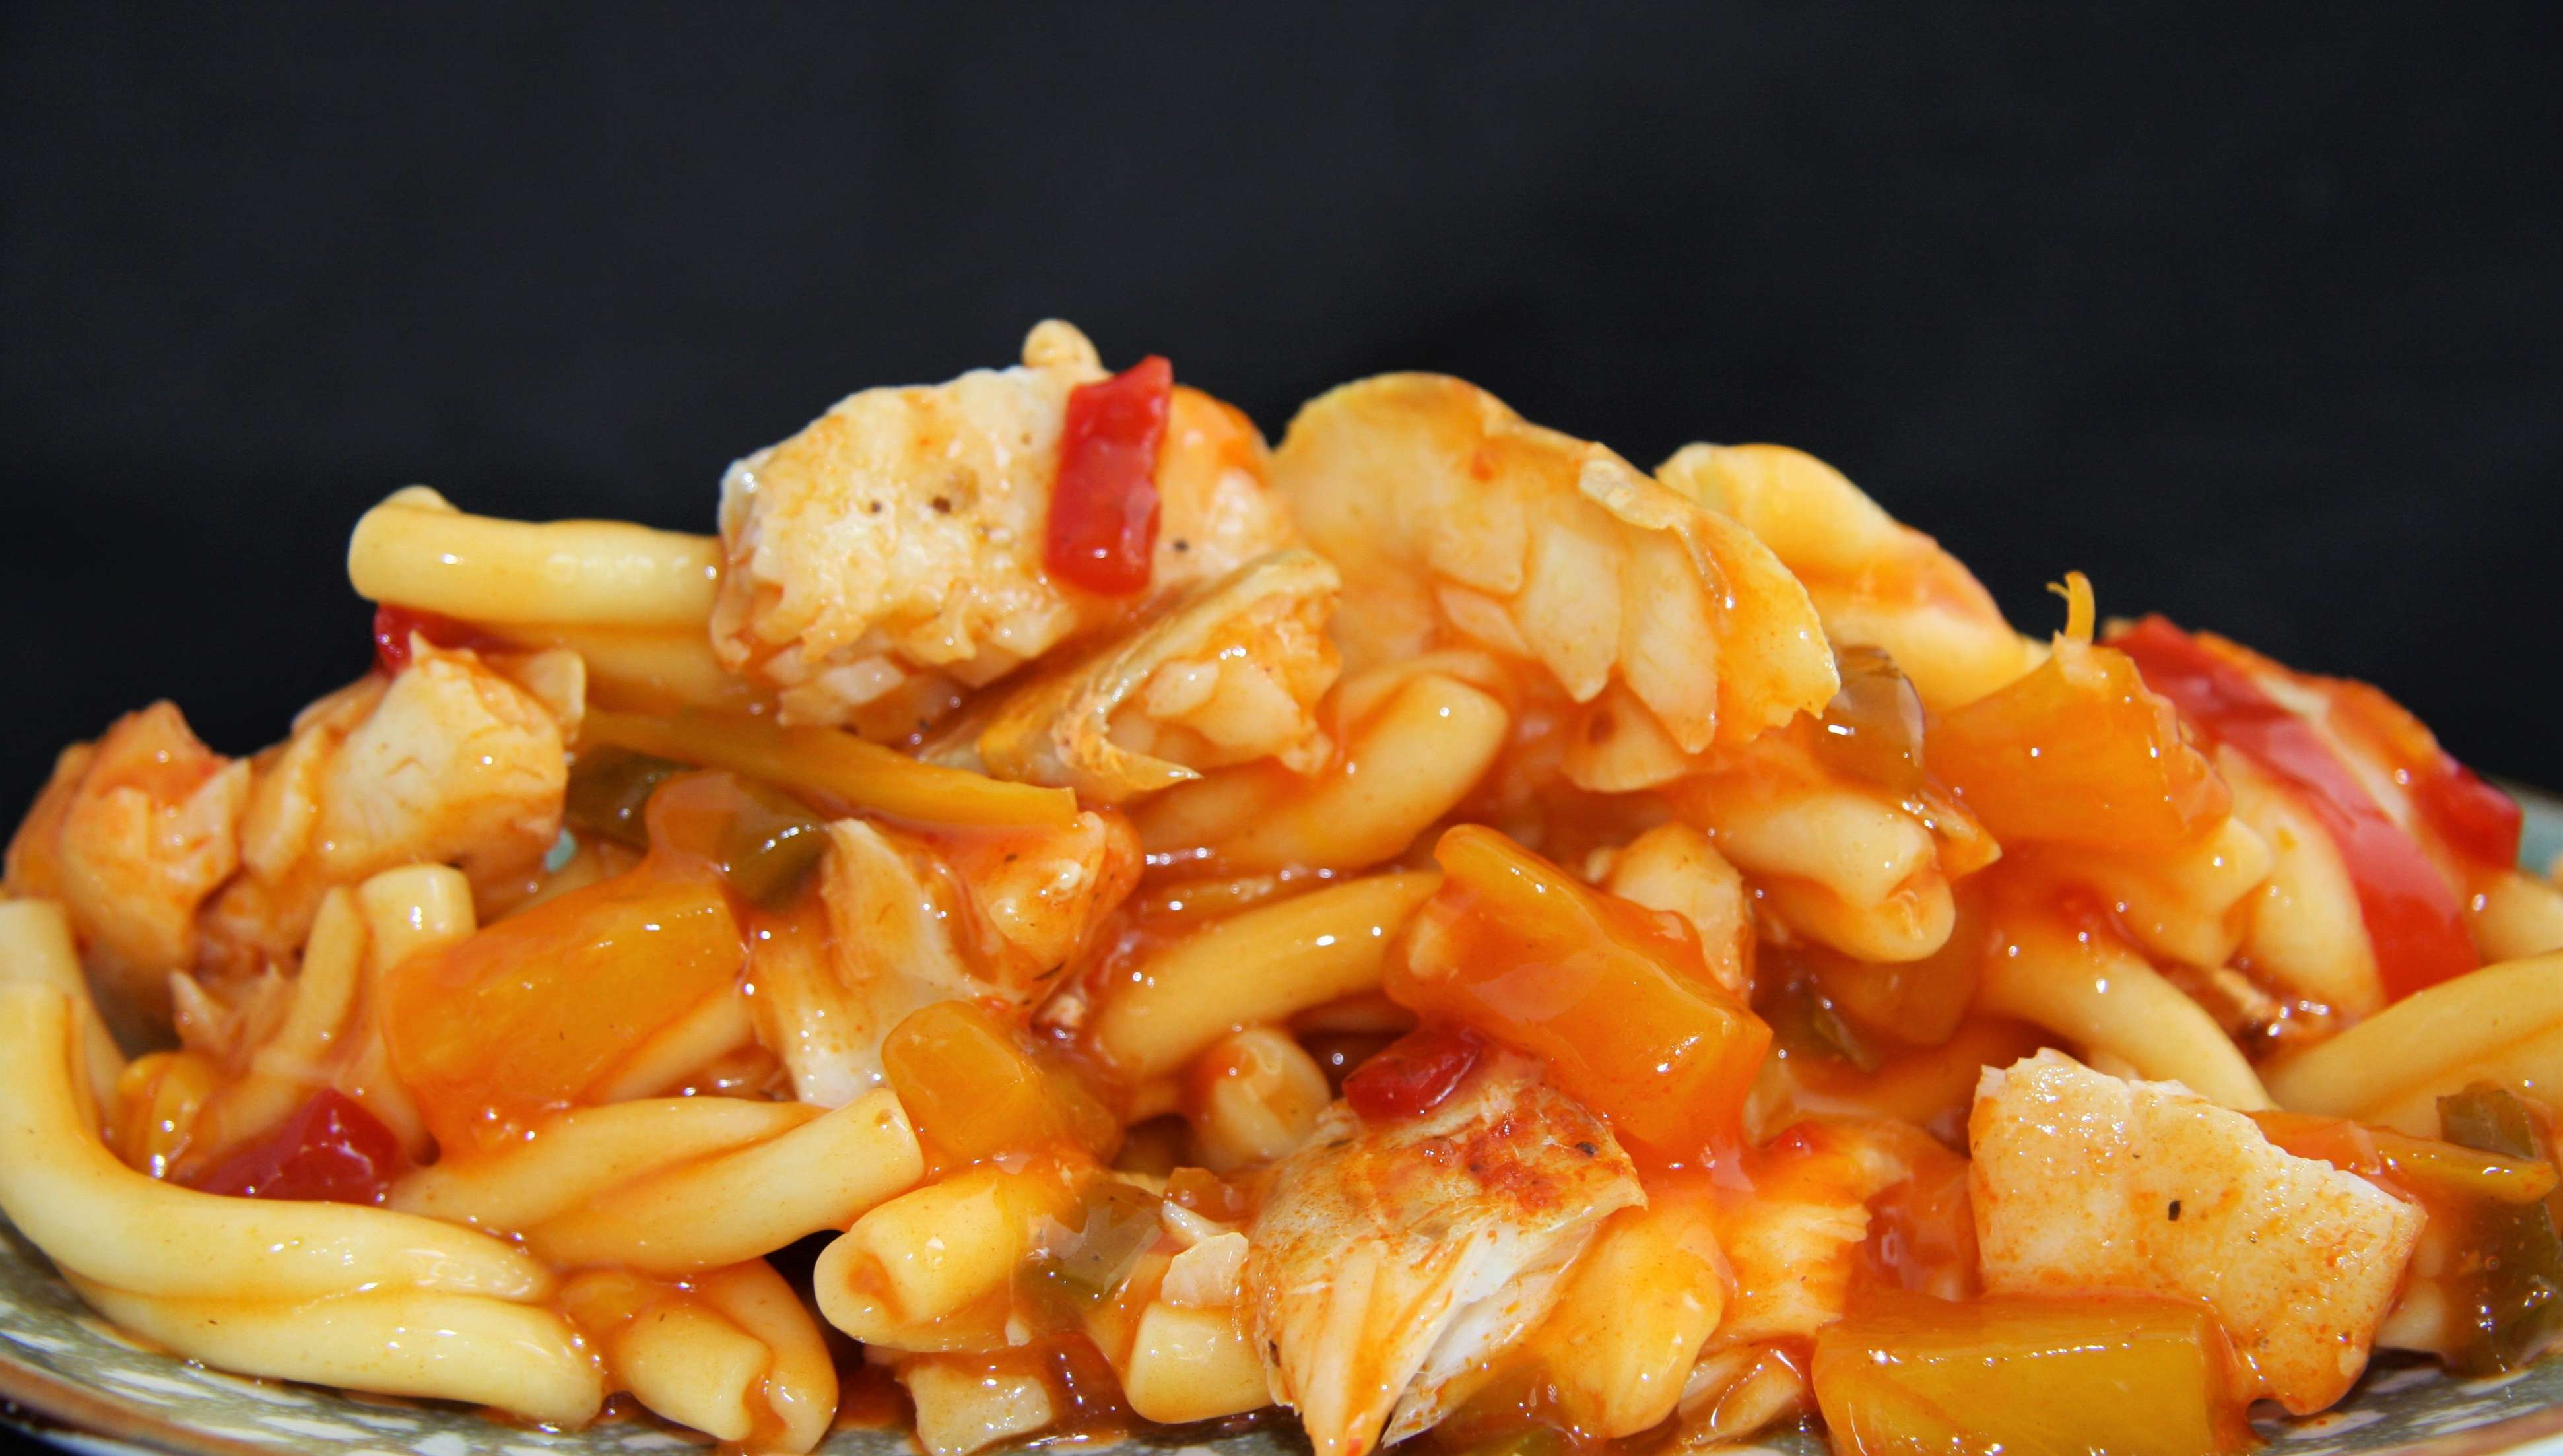 Recept: ku lo yuk saus en kabeljauw met pasta